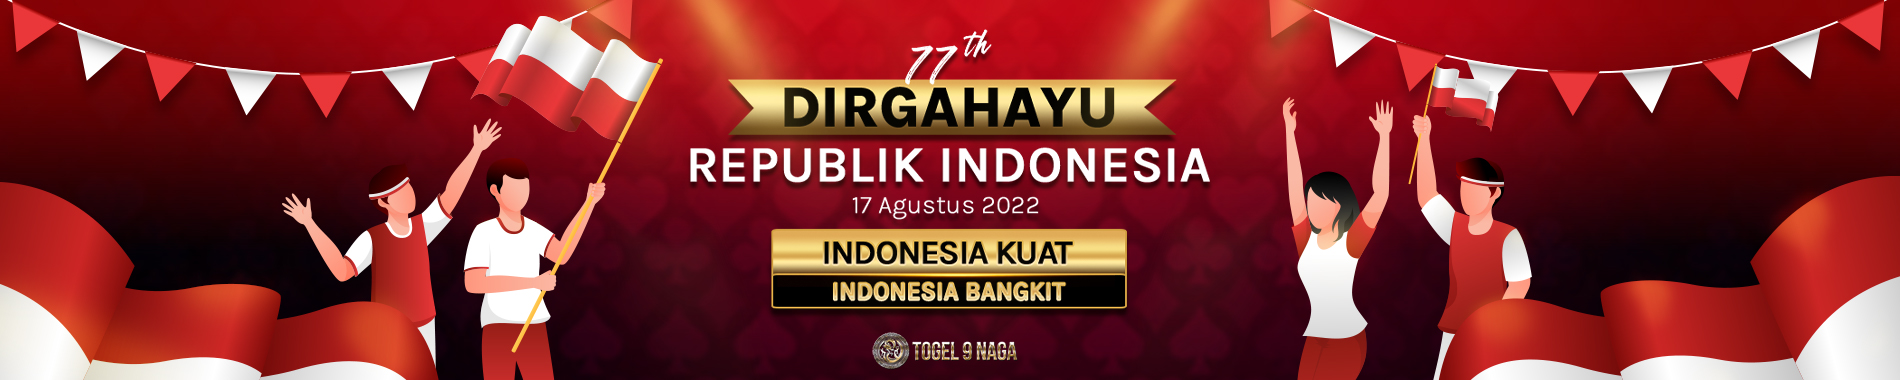 Dirgahayu Republik Indonesia   17 Agustus 2022 Togel9Naga